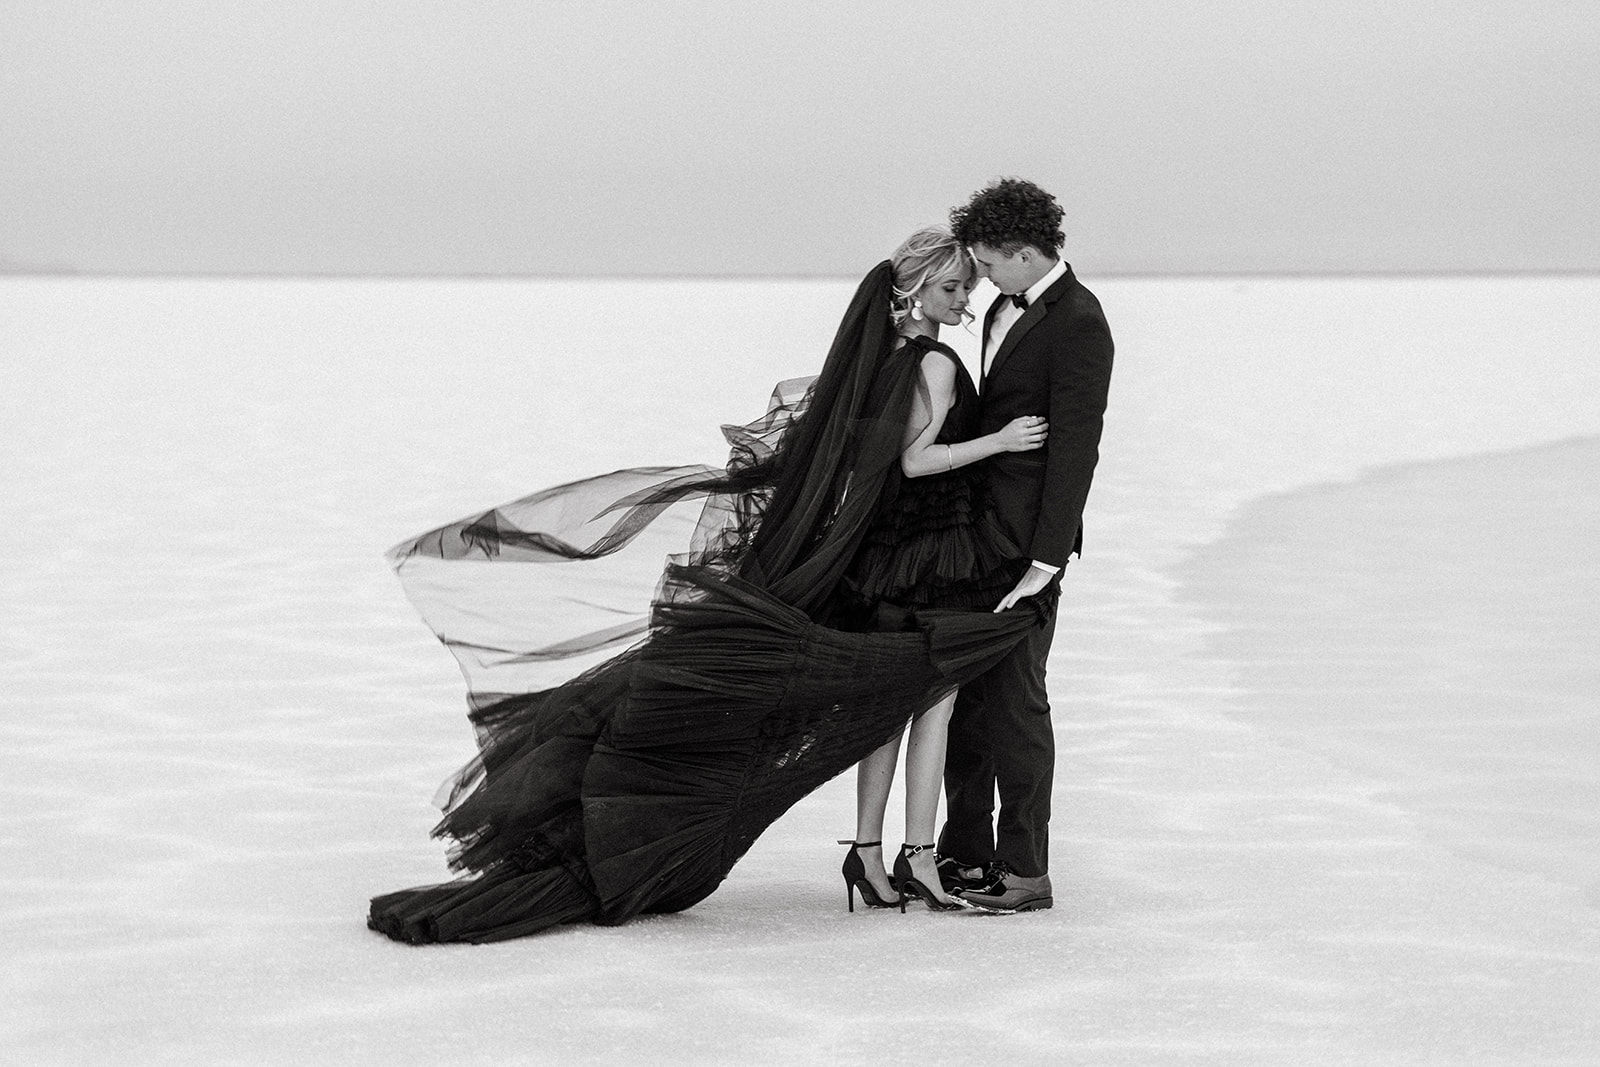 Breathtaking Bonneville Salt Flats serve as backdrop for timeless couple’s portrait